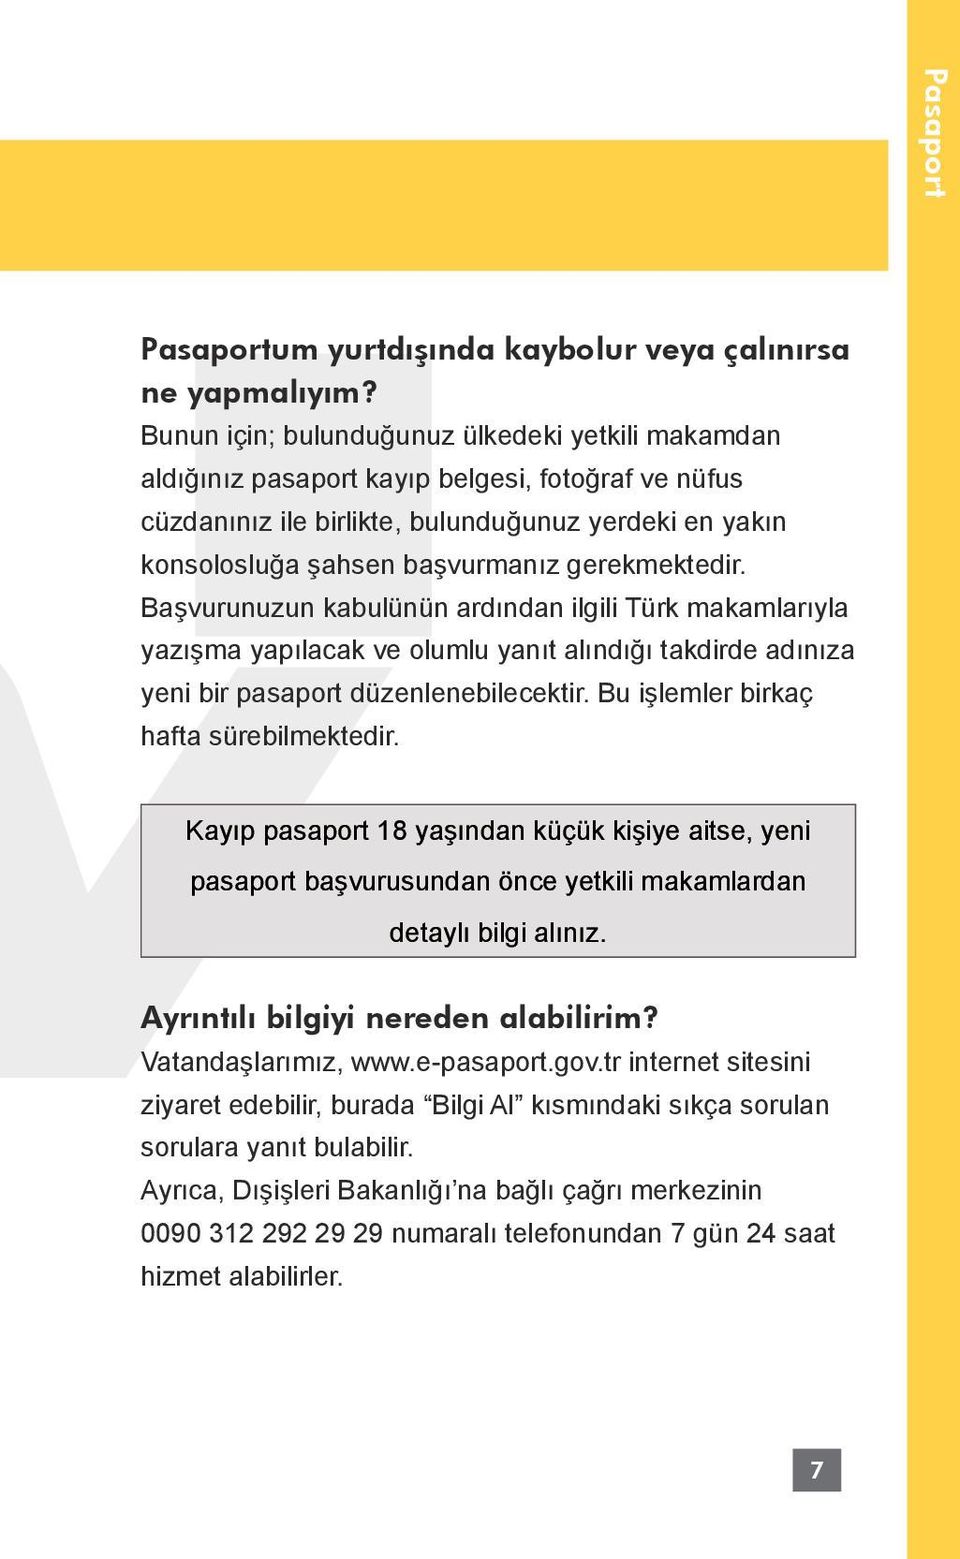 gerekmektedir. Başvurunuzun kabulünün ardından ilgili Türk makamlarıyla yazışma yapılacak ve olumlu yanıt alındığı takdirde adınıza yeni bir pasaport düzenlenebilecektir.